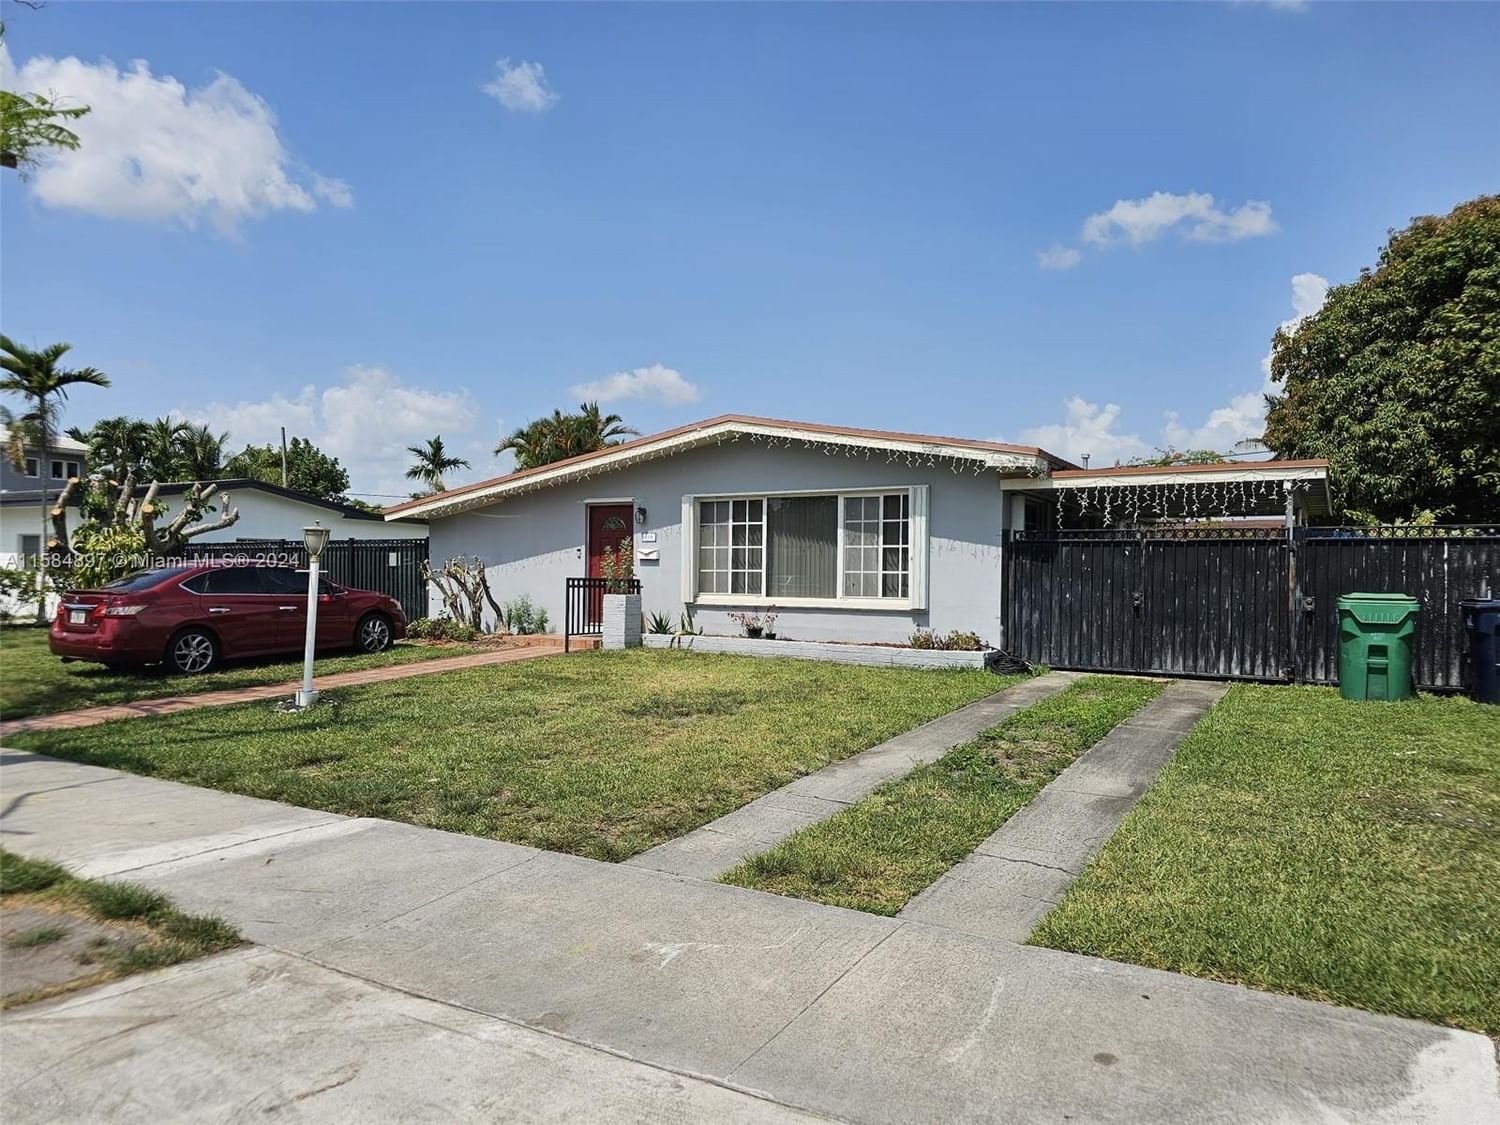 Real estate property located at 1700 87th Pl, Miami-Dade County, CORAL PARK ESTATES SEC 1, Miami, FL